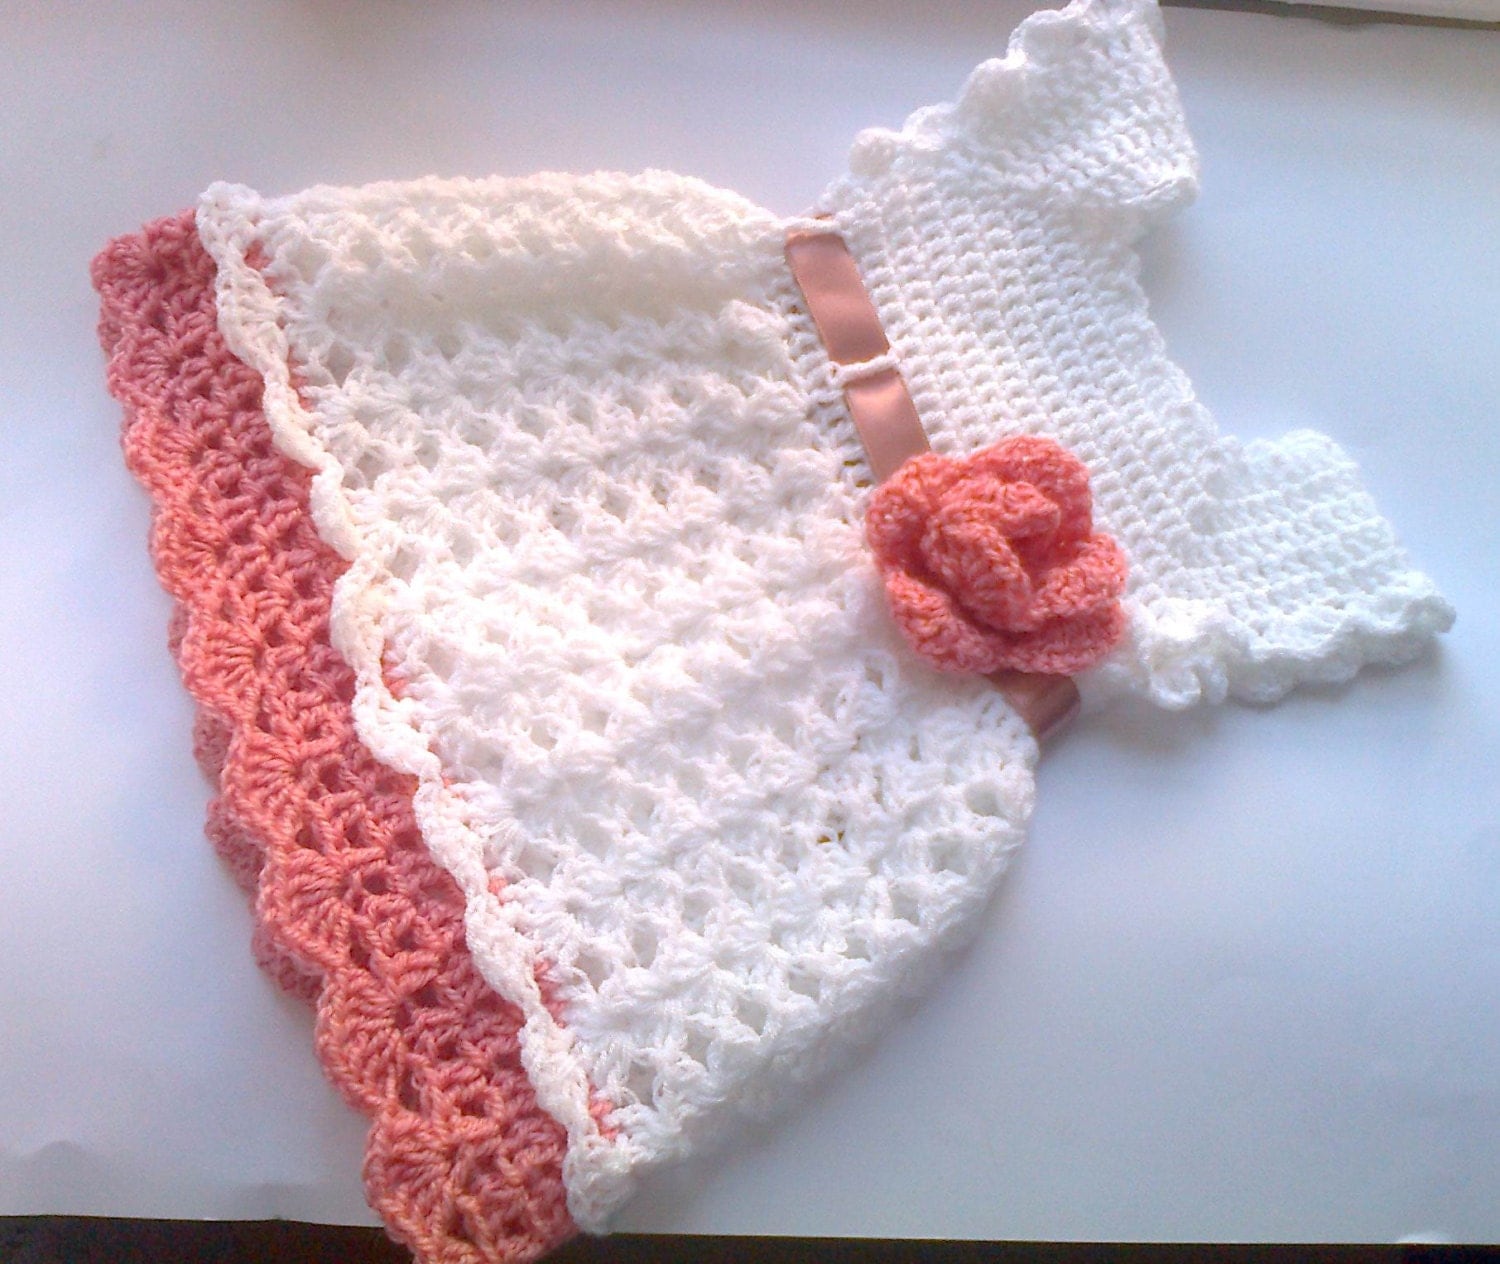 Handmade Crochet Baby Dress in white and Dusty Pink Newborn